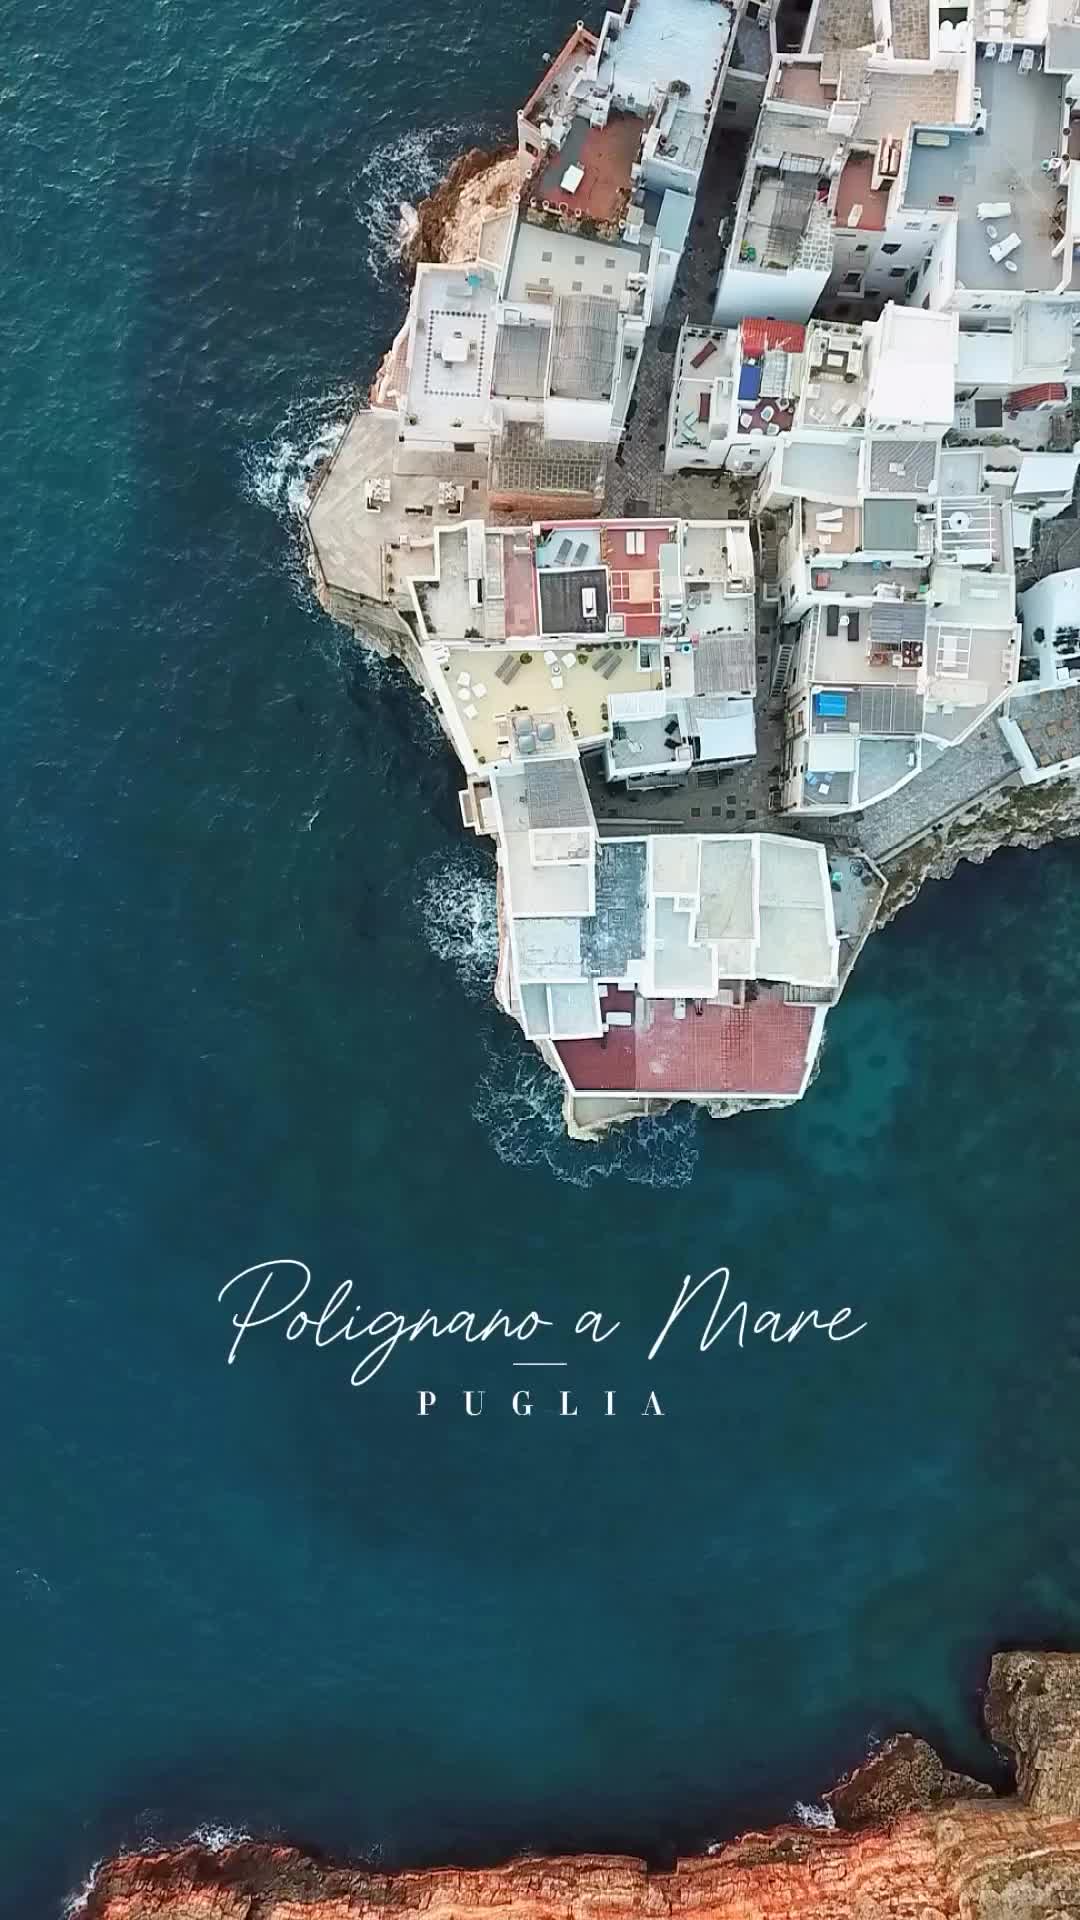 Discover Polignano a Mare: Puglia's Coastal Gem